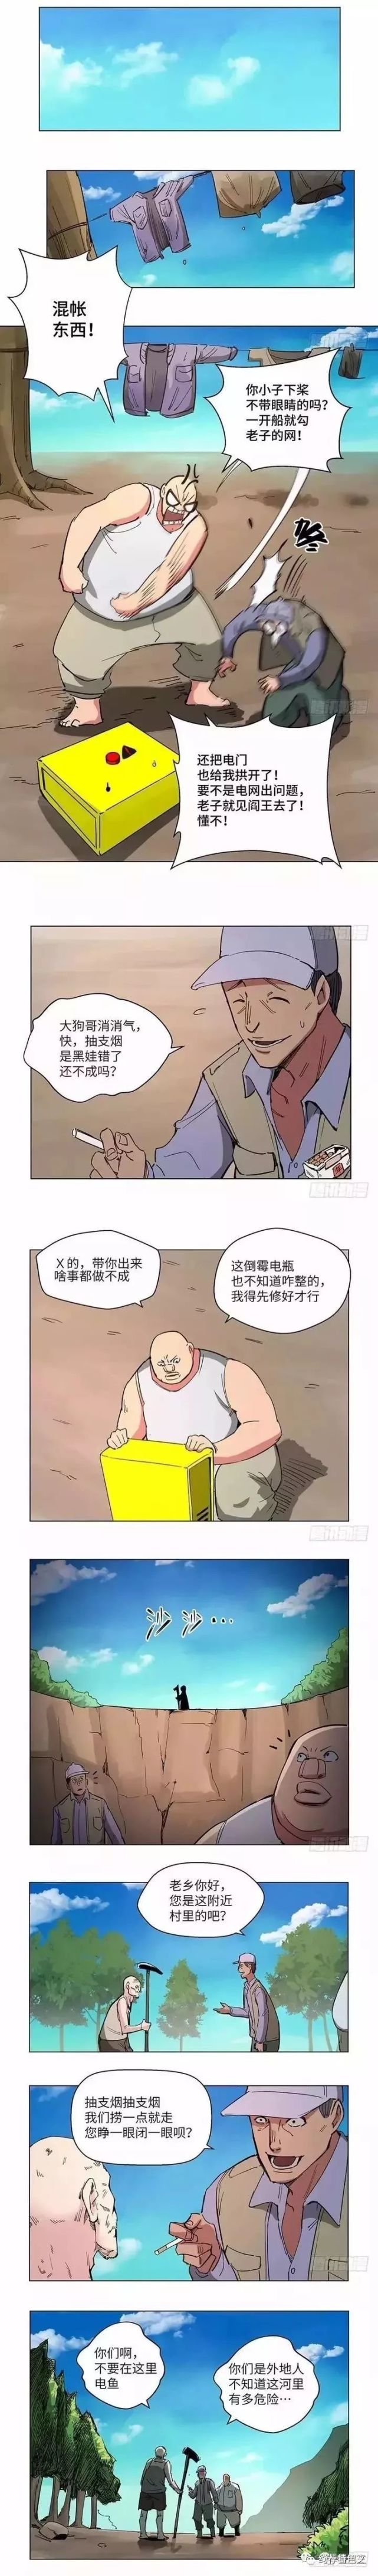 人性恐怖漫画:心跳300秒之《断子绝孙》!